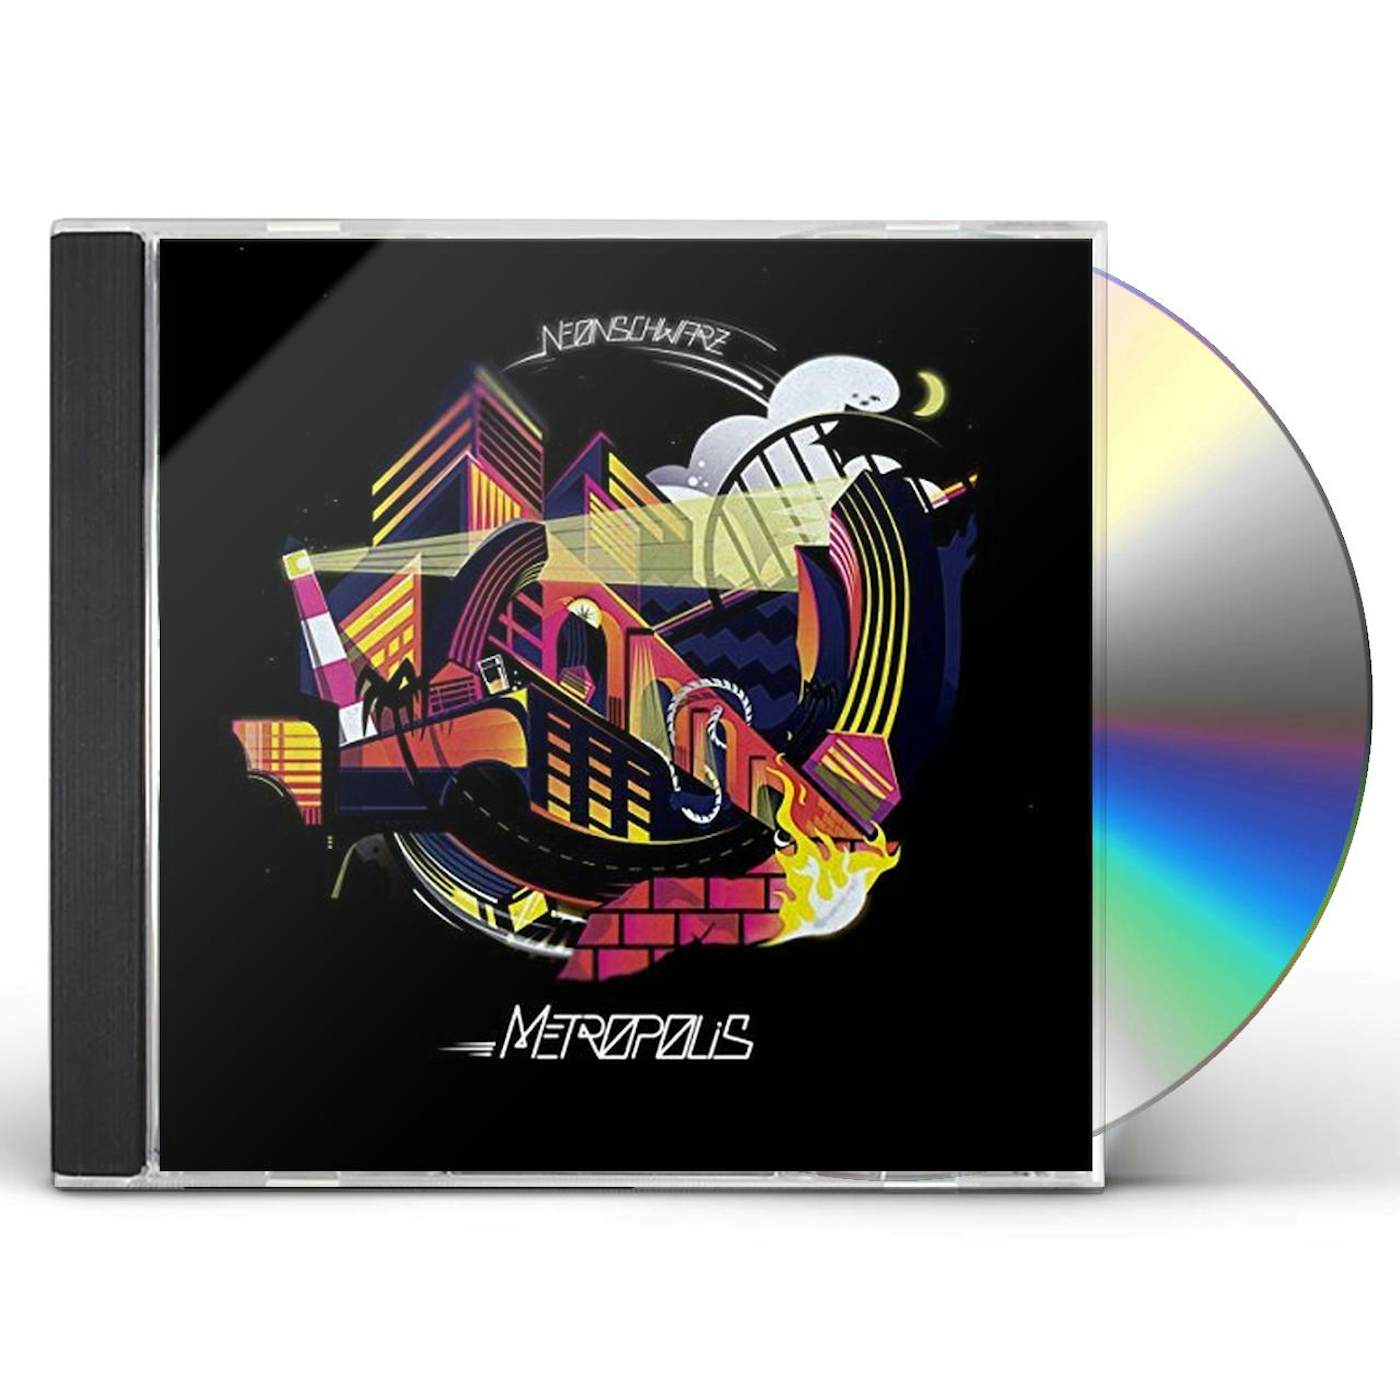 Neonschwarz METROPOLIS CD